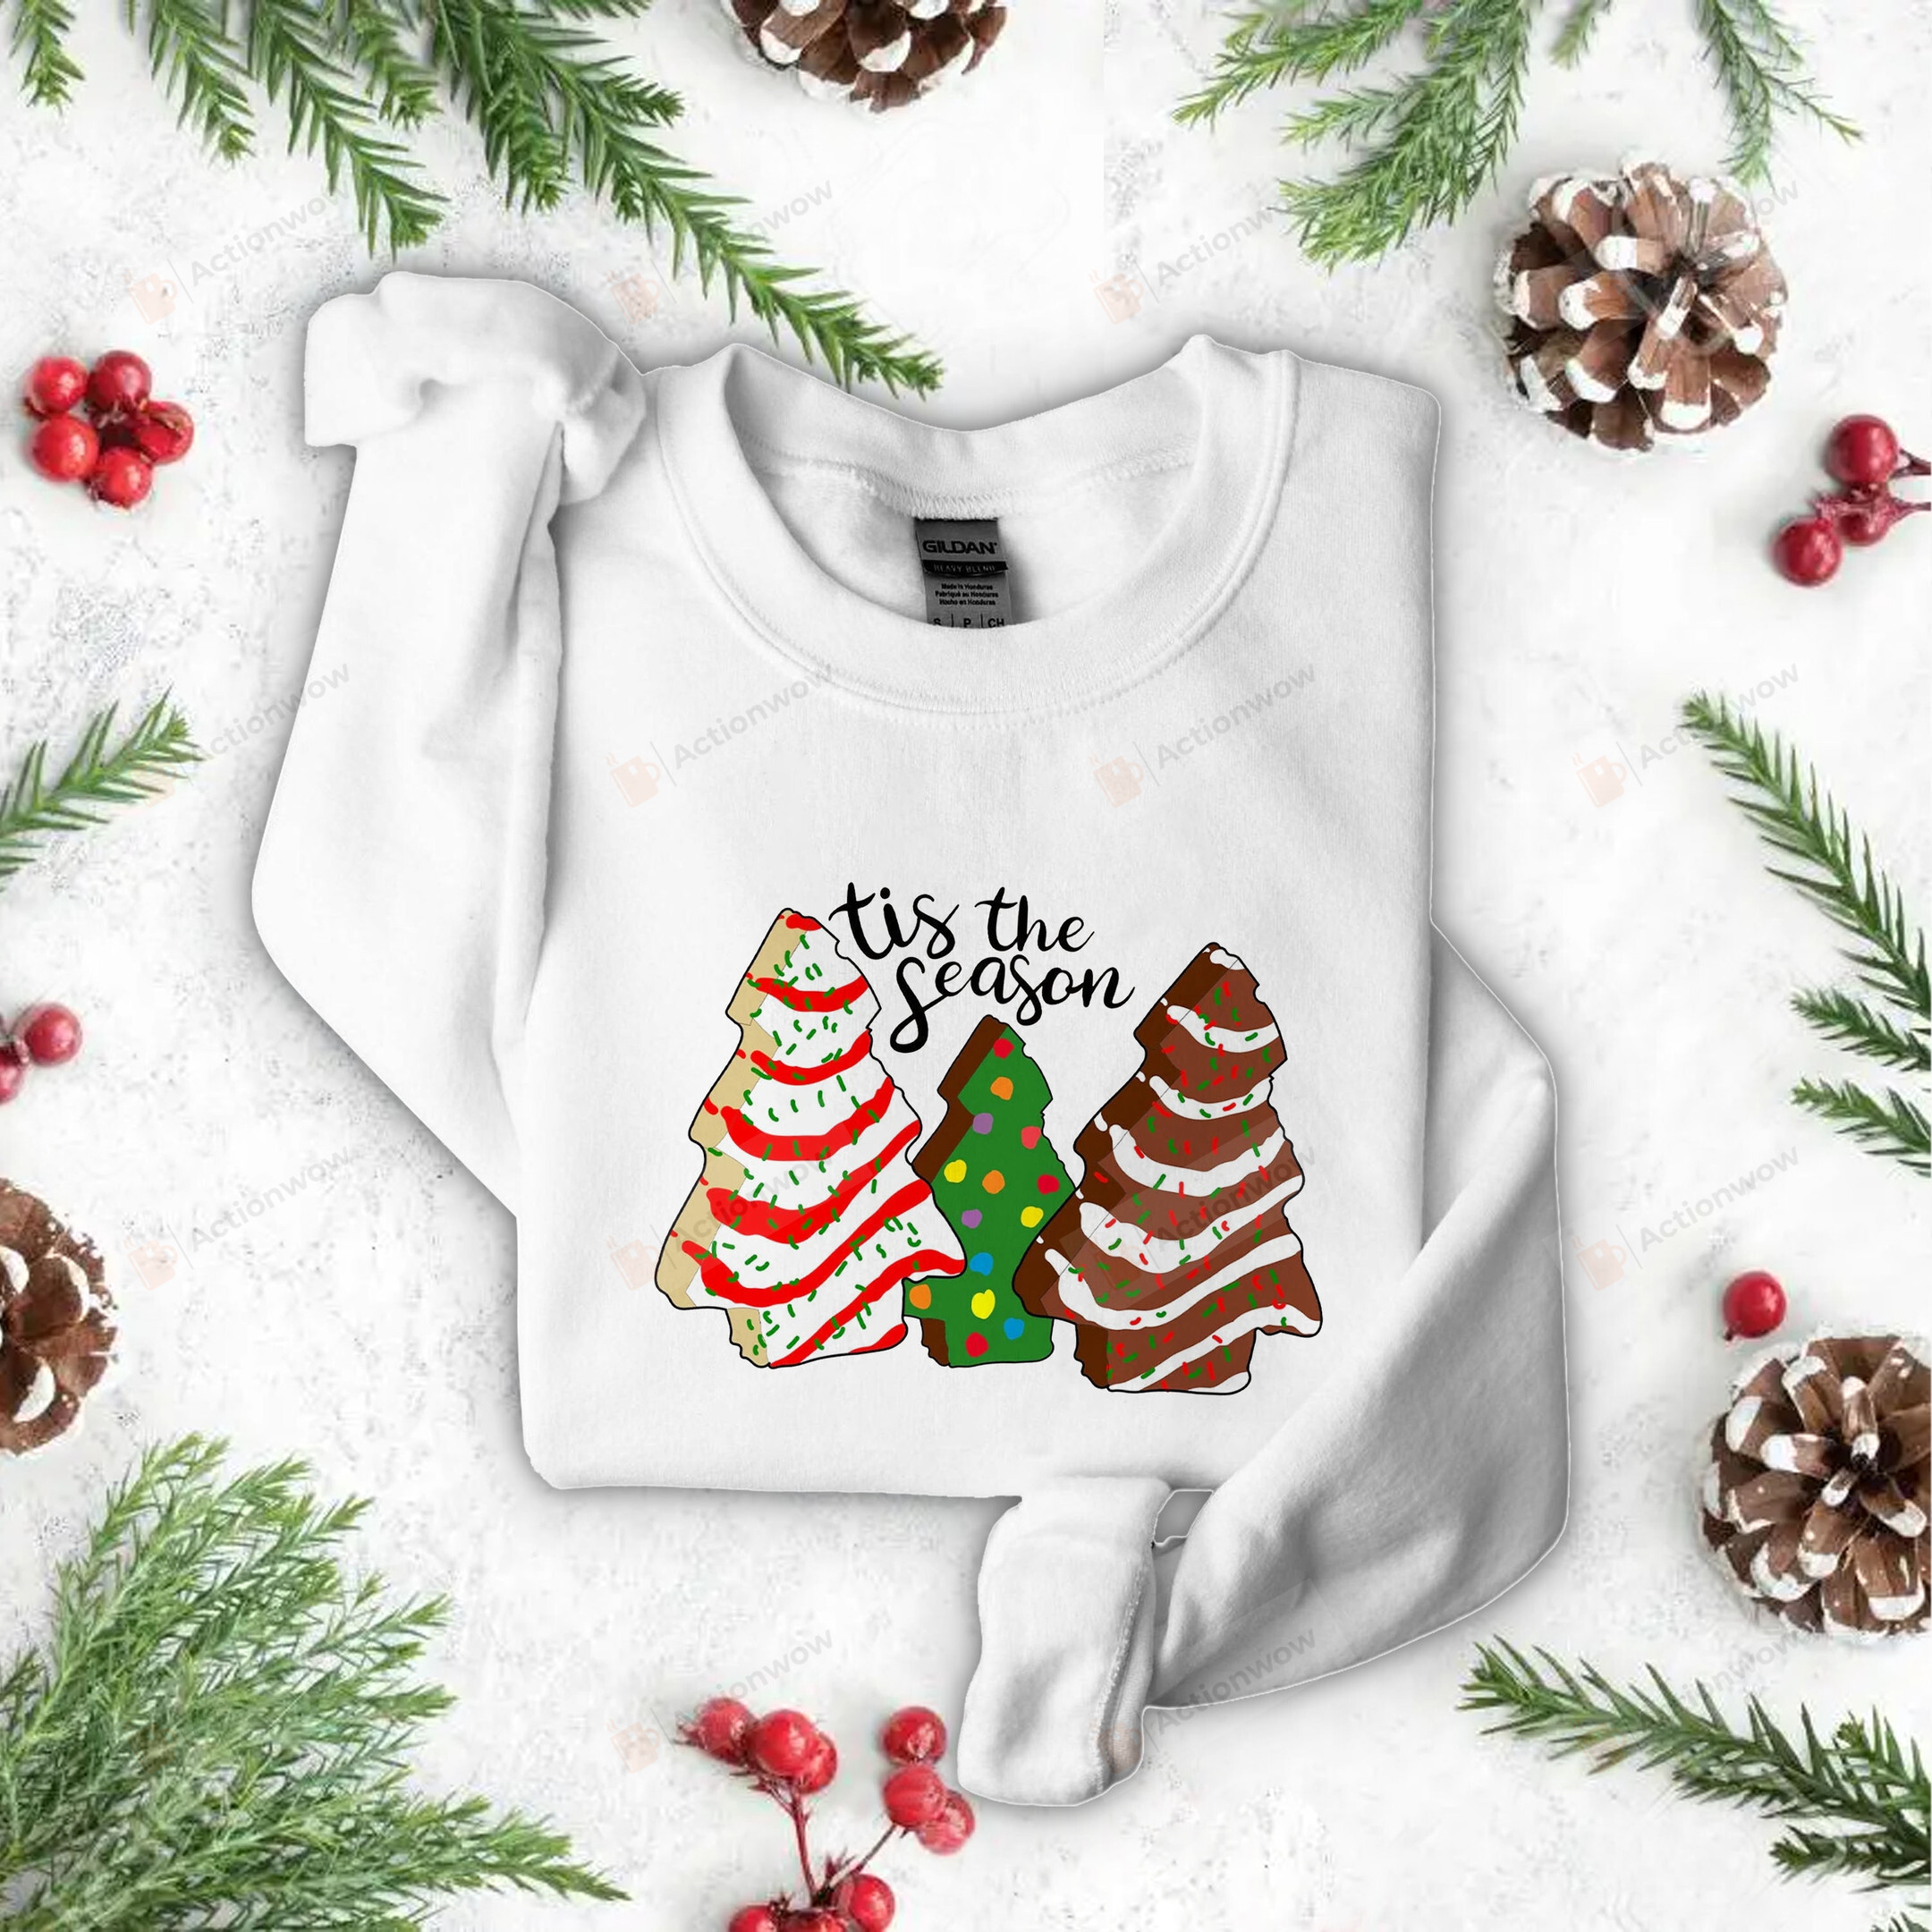 Funny Tis The Season Christmas Tree Cakes Sweatshirts, Christmas Sweatshirt For Women, Christmas Tis The Season Sweatshirt